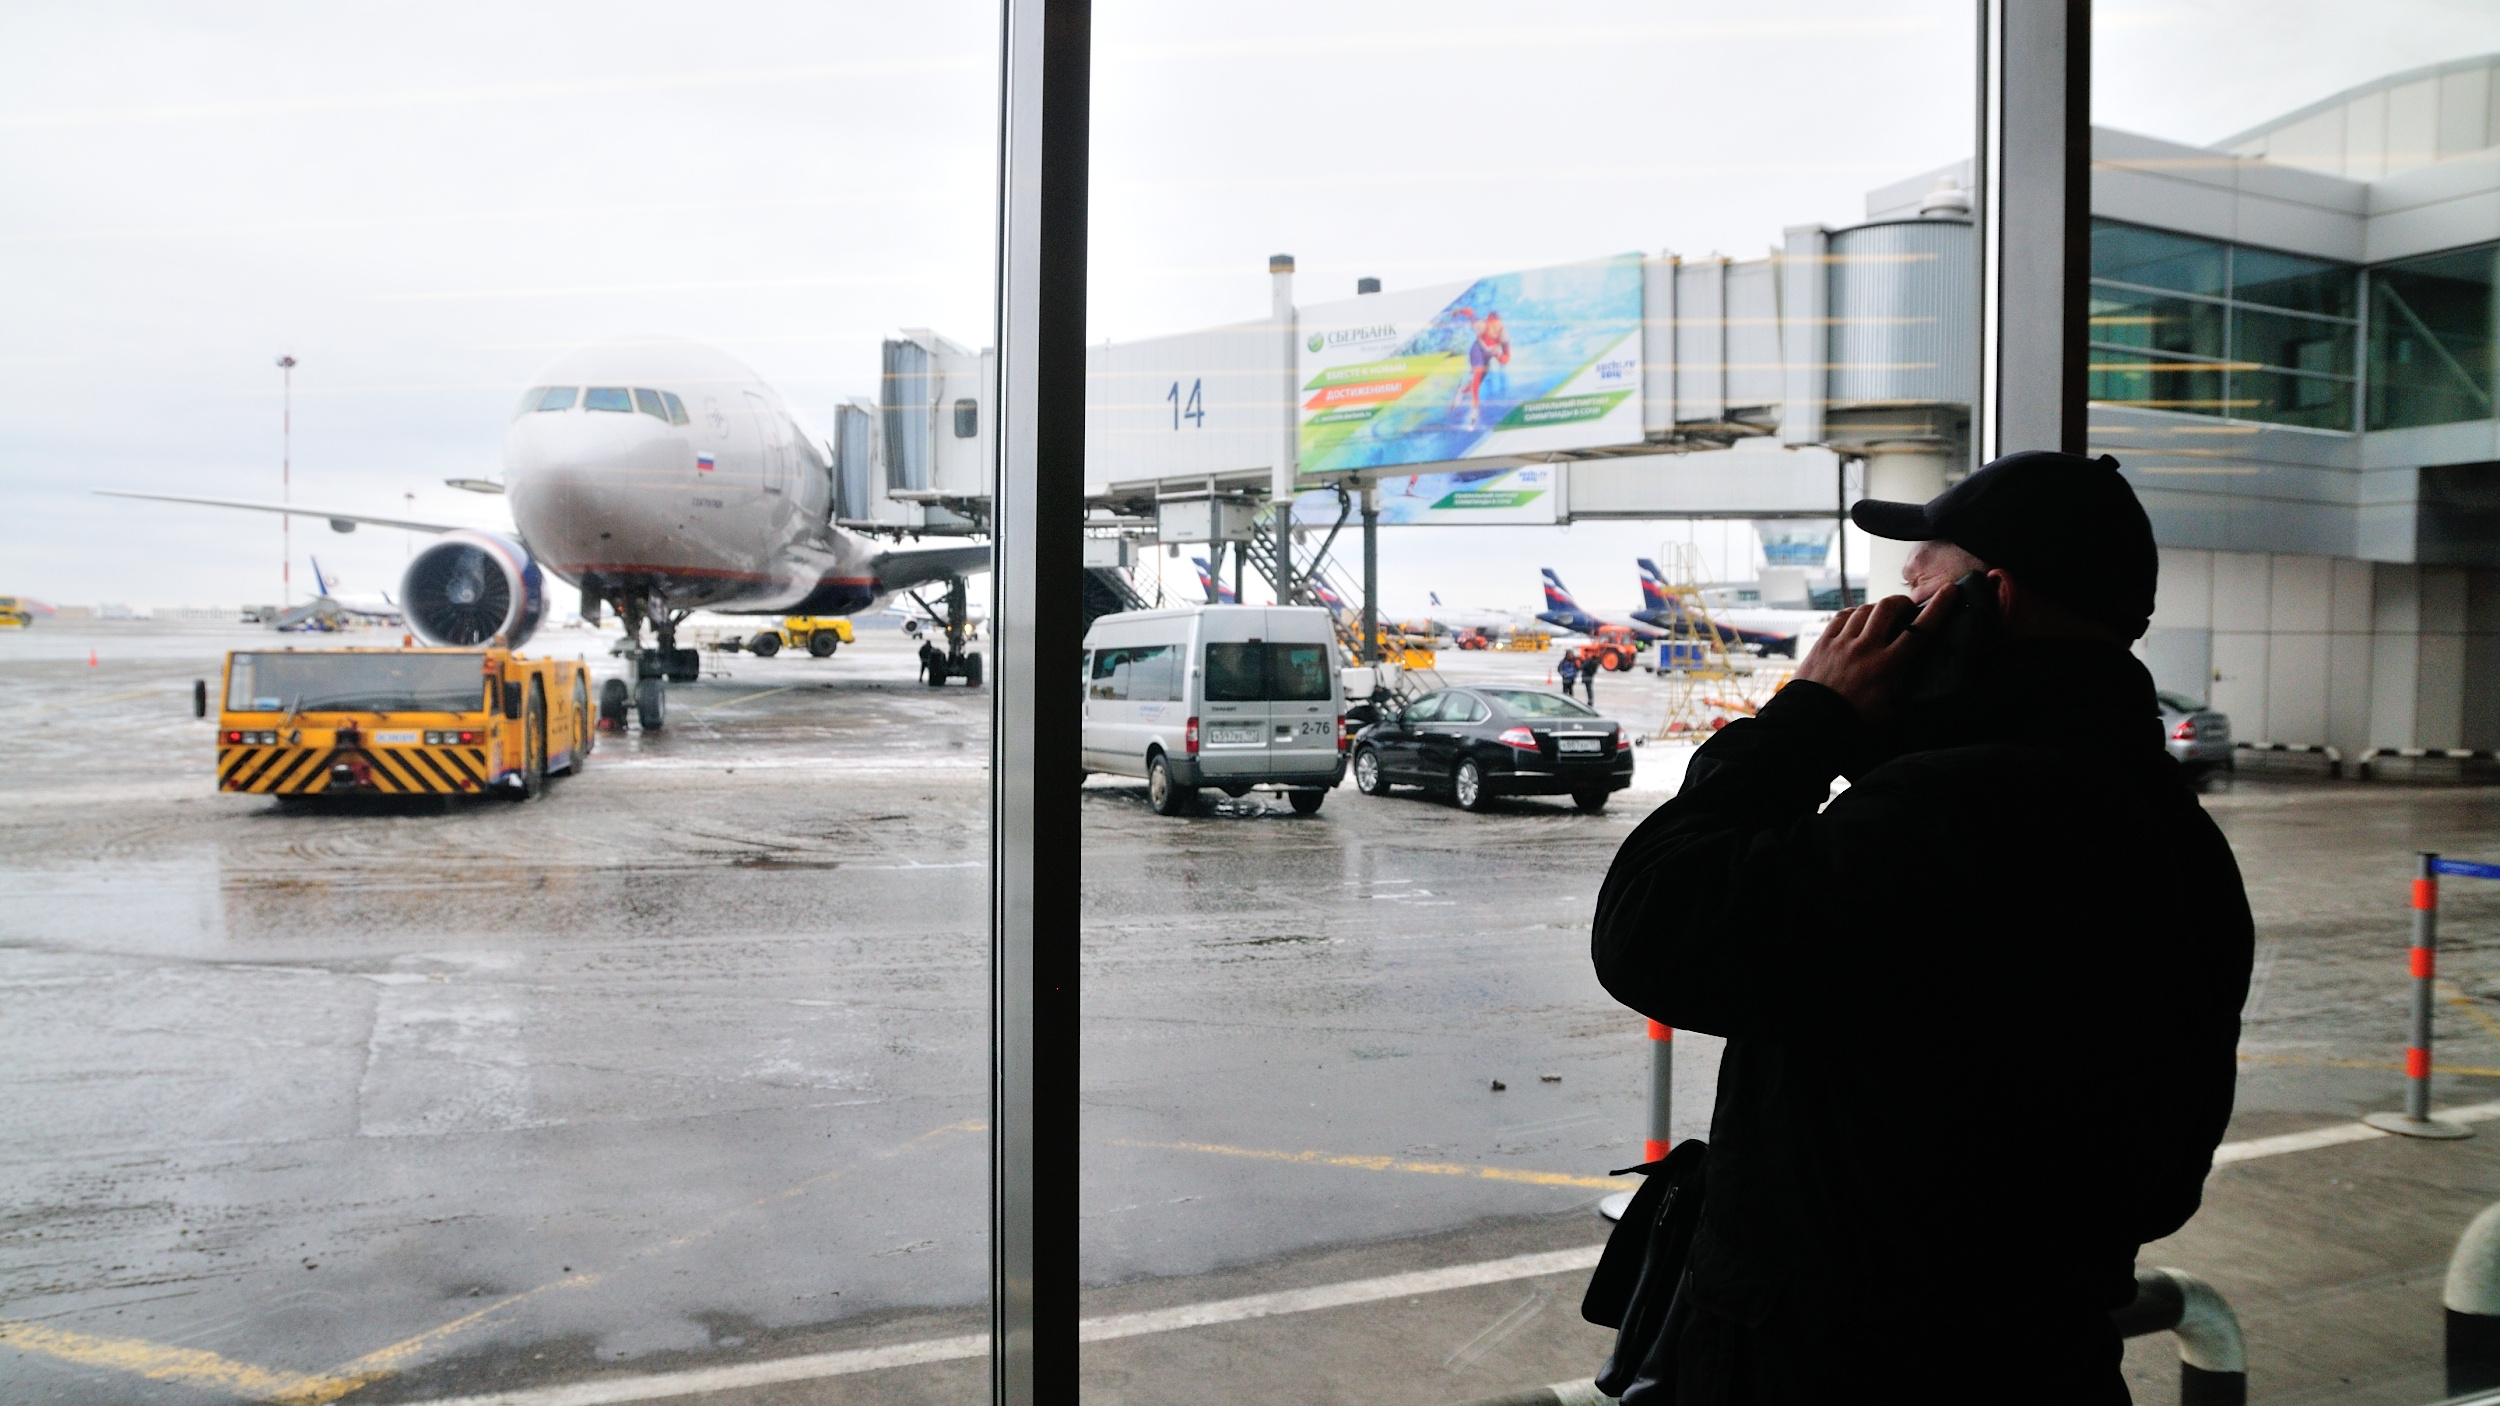 Аэропорт Шереметьево подыщет своим сотрудникам работу в «Магните» и «Пятерочке»